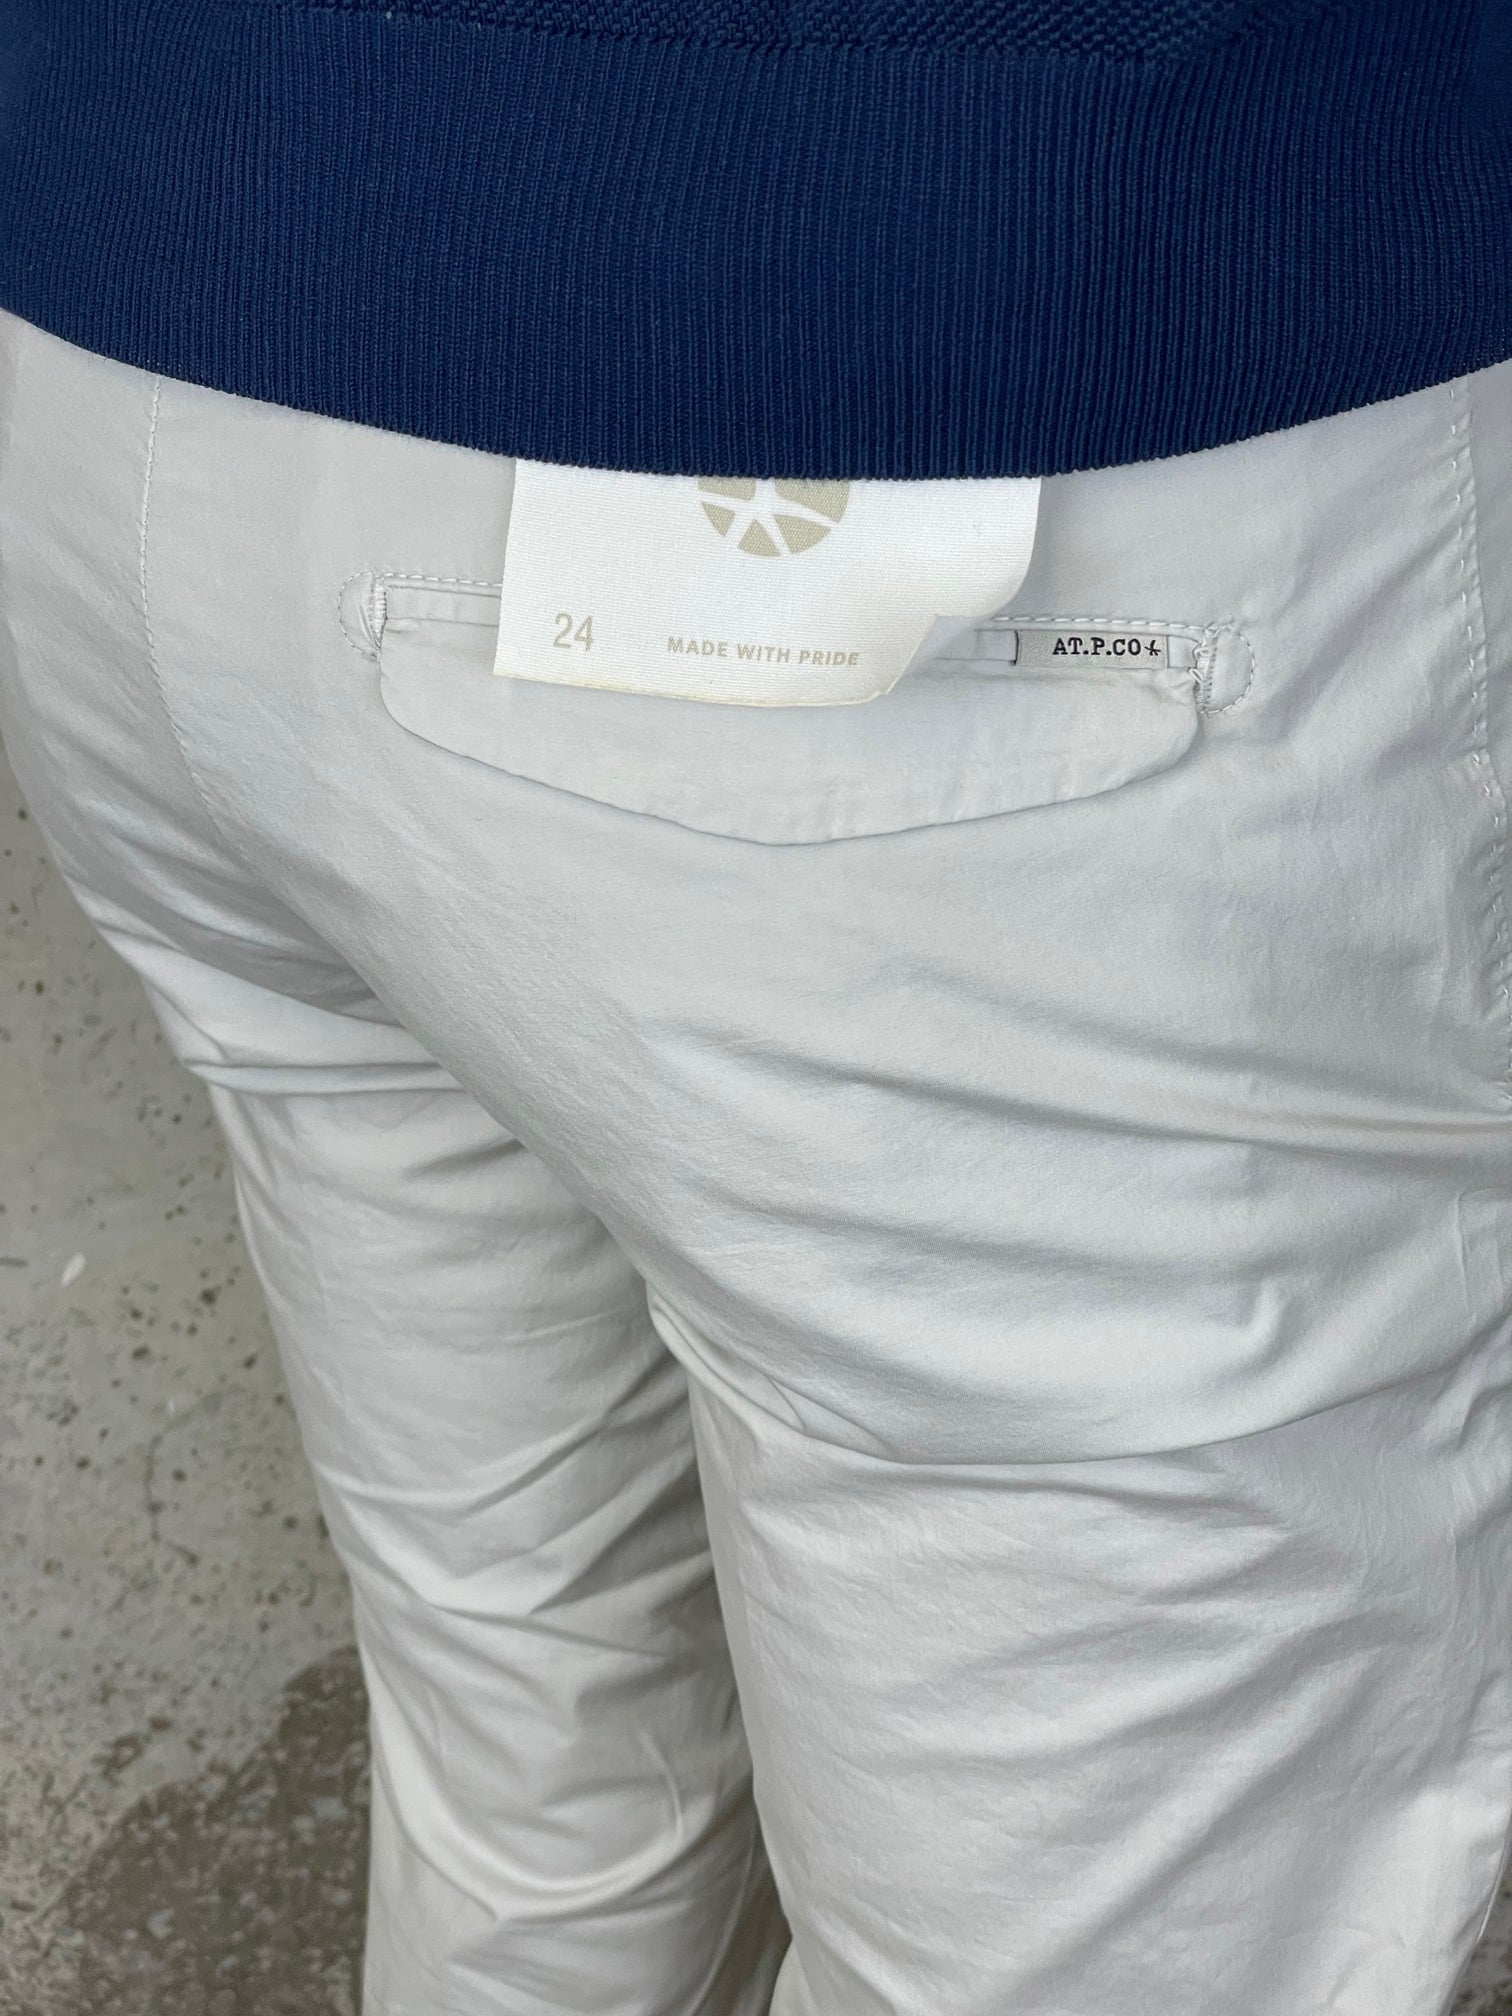 Atpco Light Gray Sasa Slim Light Cotton Trousers – Il Posto delle